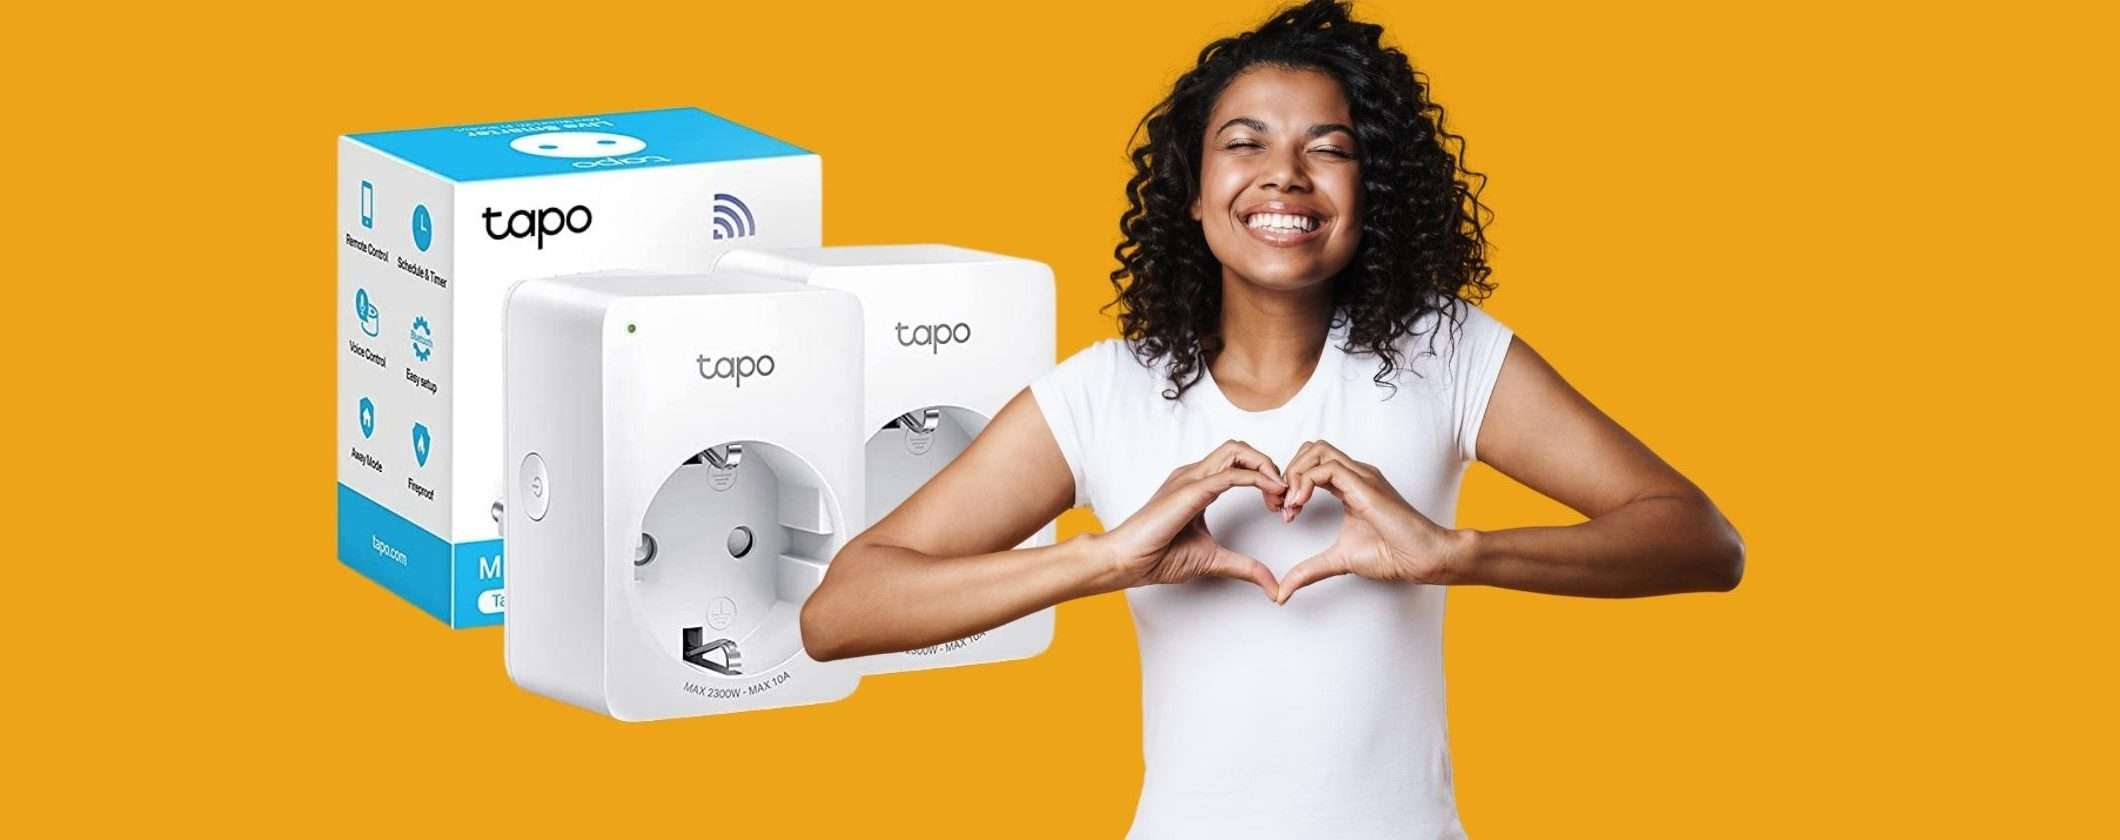 L'offerta da non perdere: 2 mini prese Smart Tapo P105 a prezzo WOW